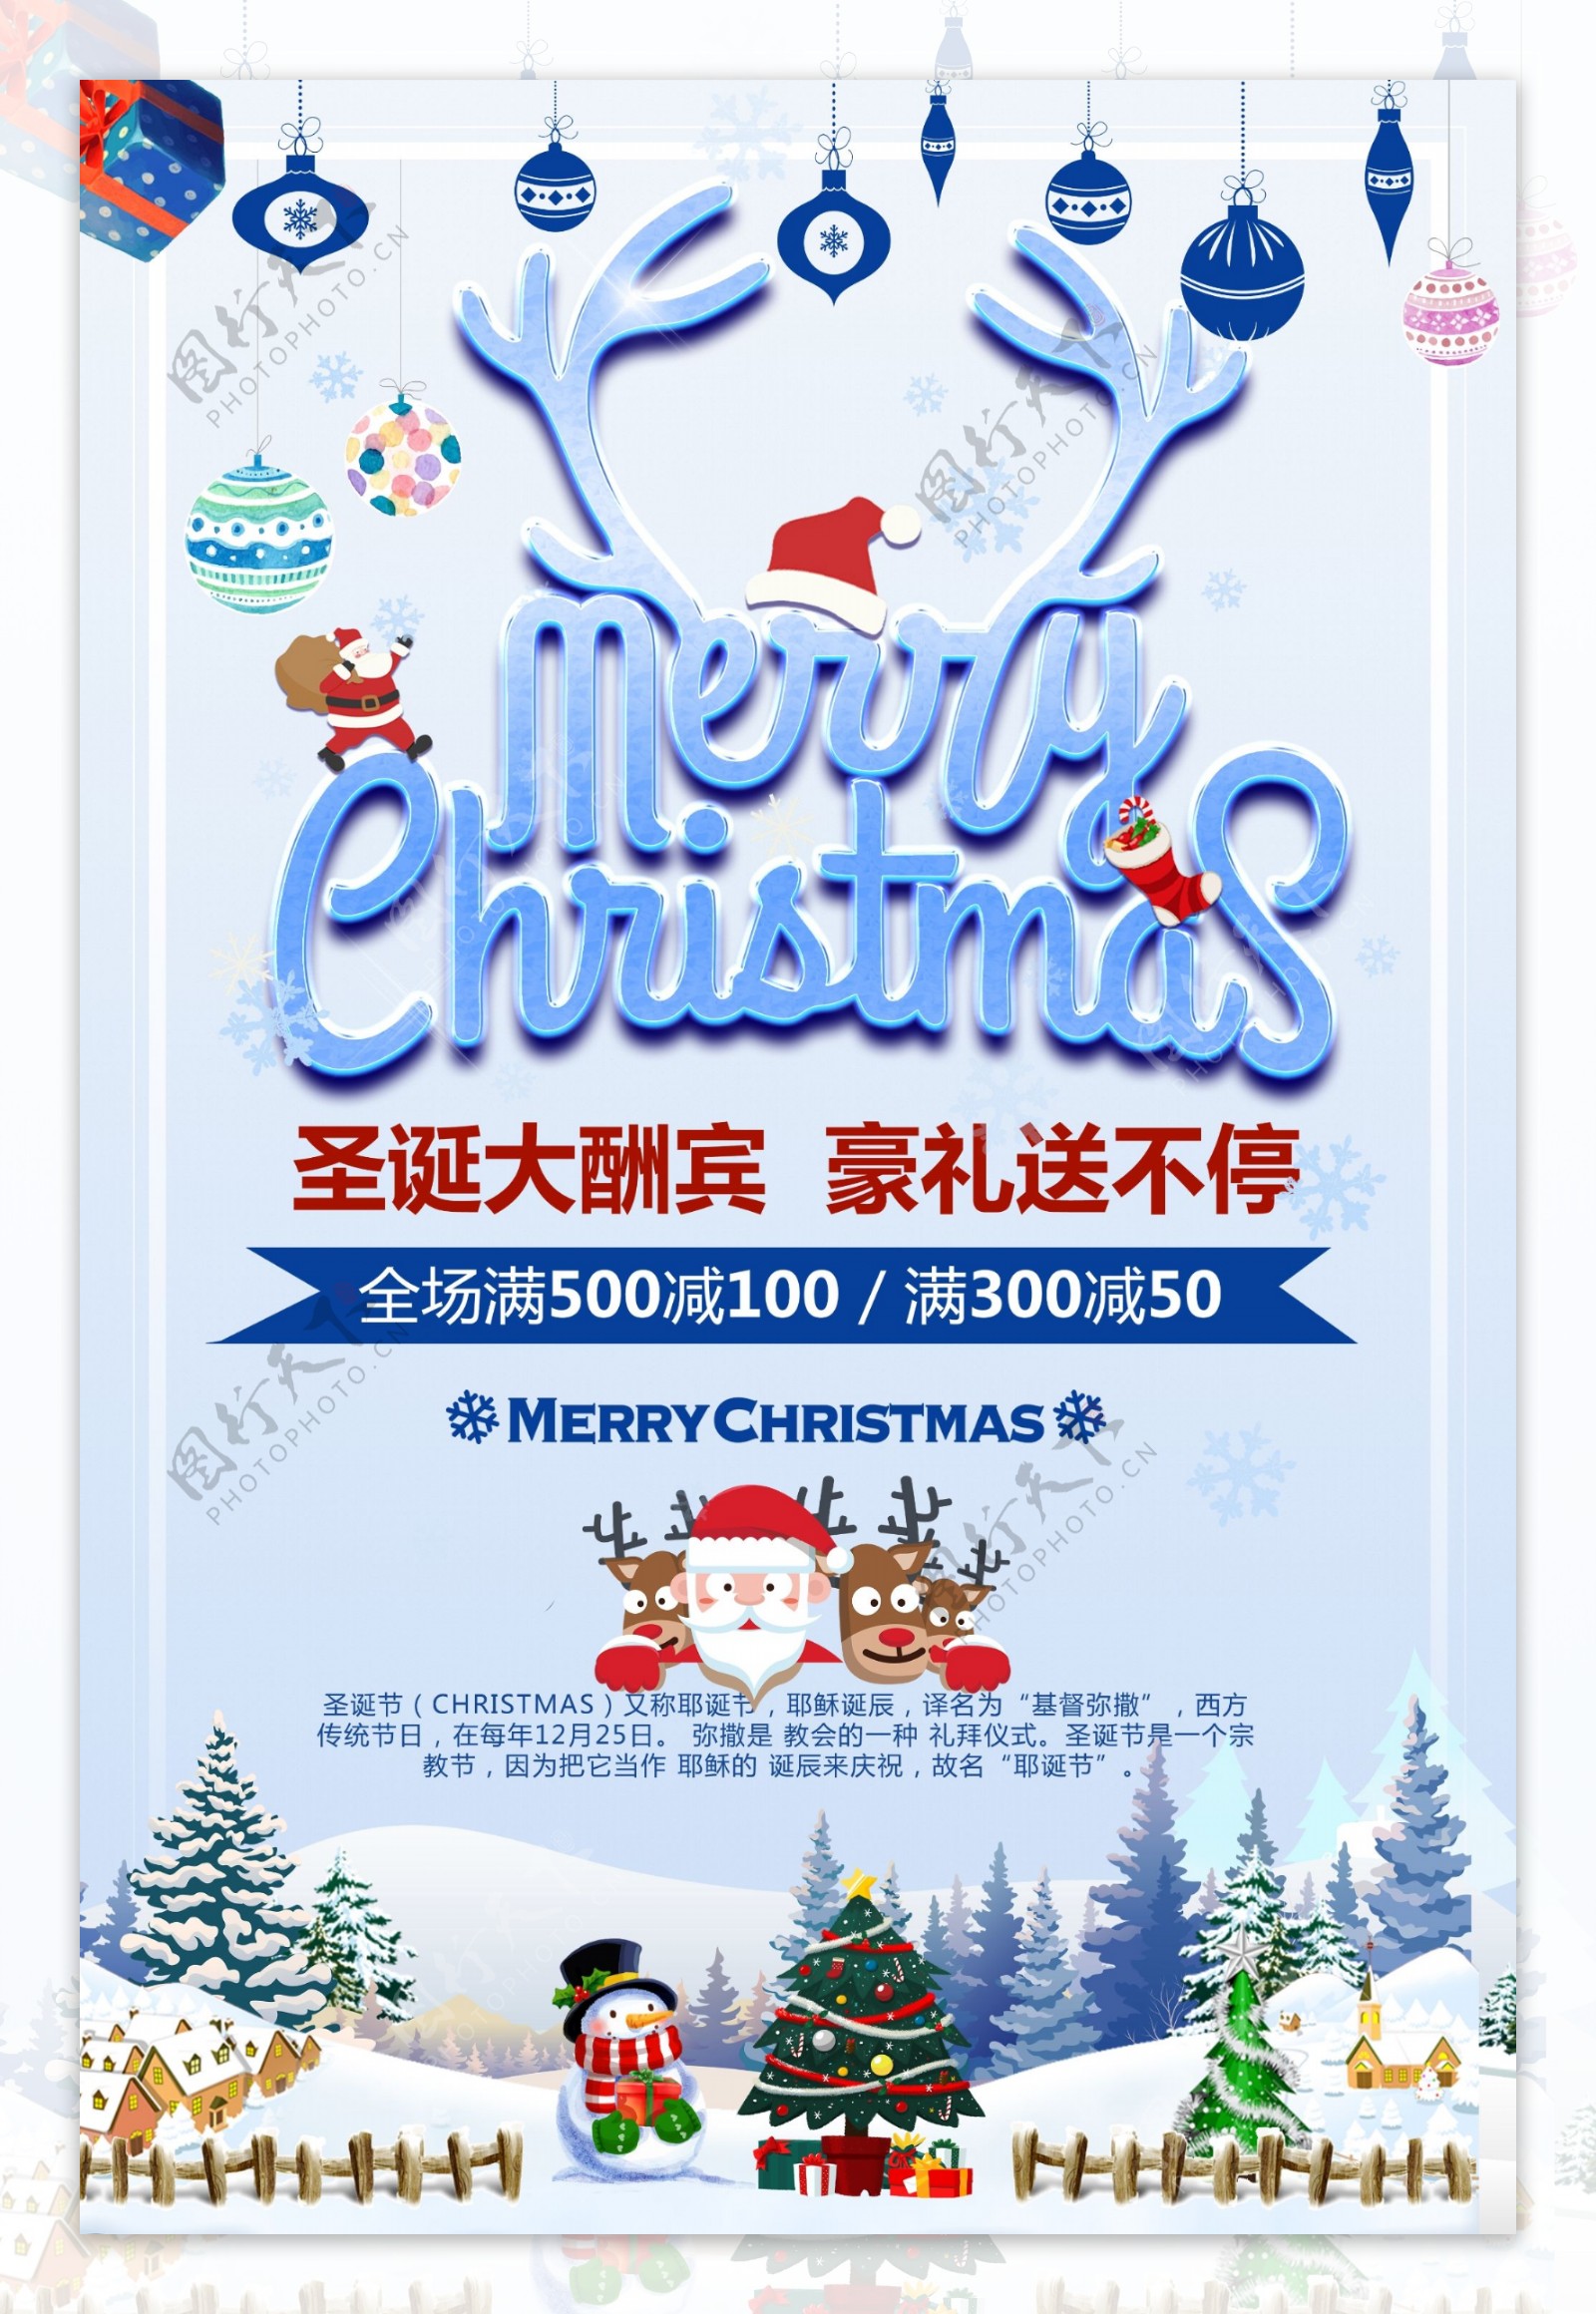 2017年蓝色简约创意狂欢圣诞节促销海报